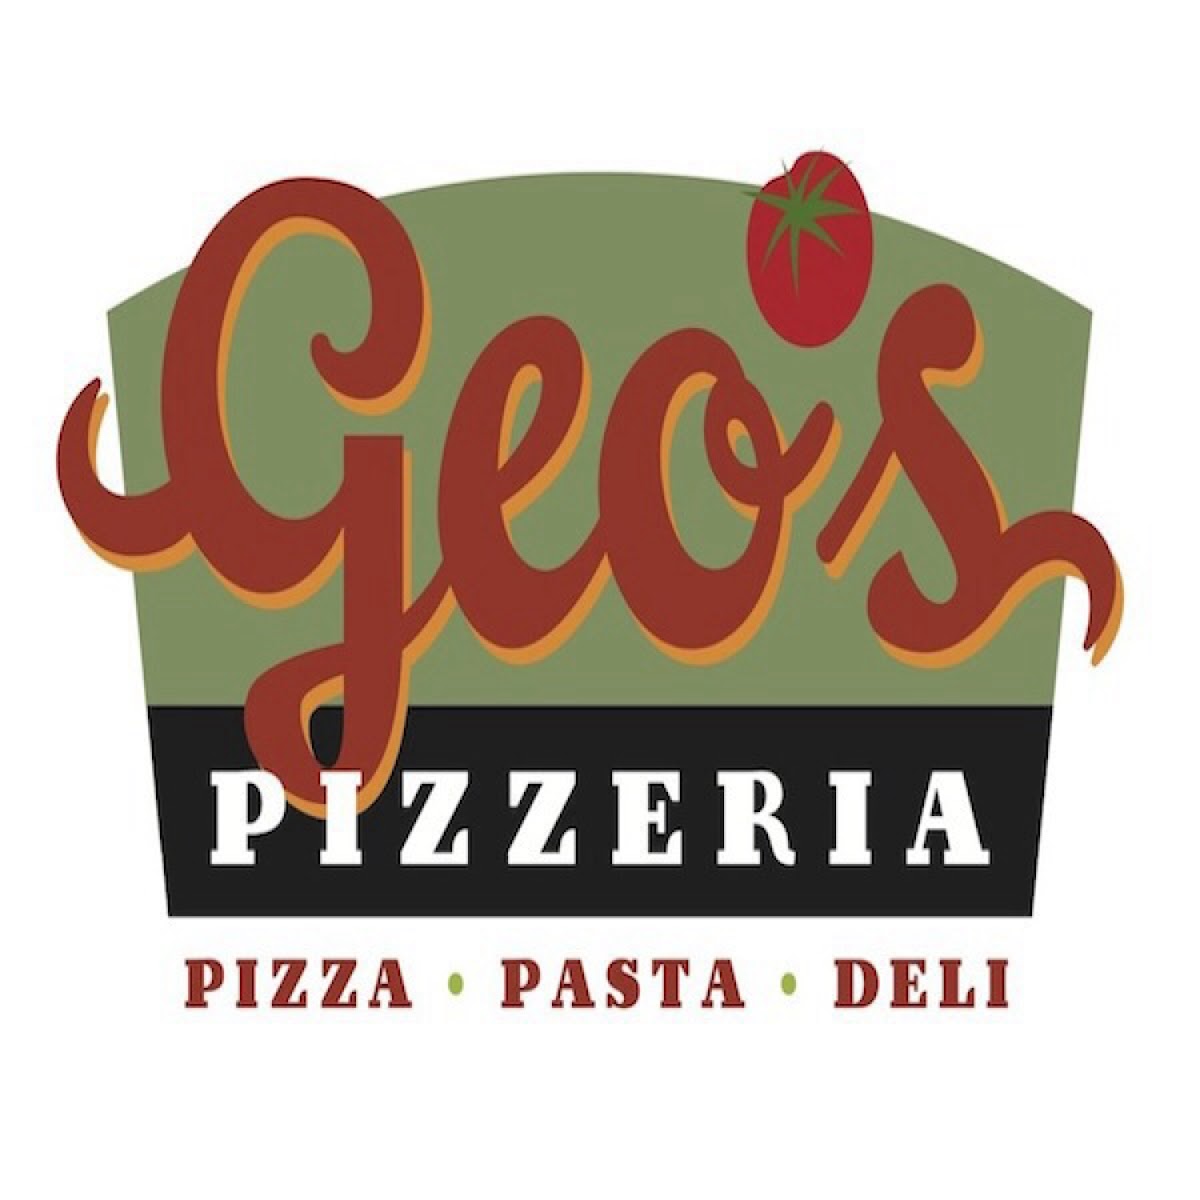 Gluten-Free at Geo's Pizza